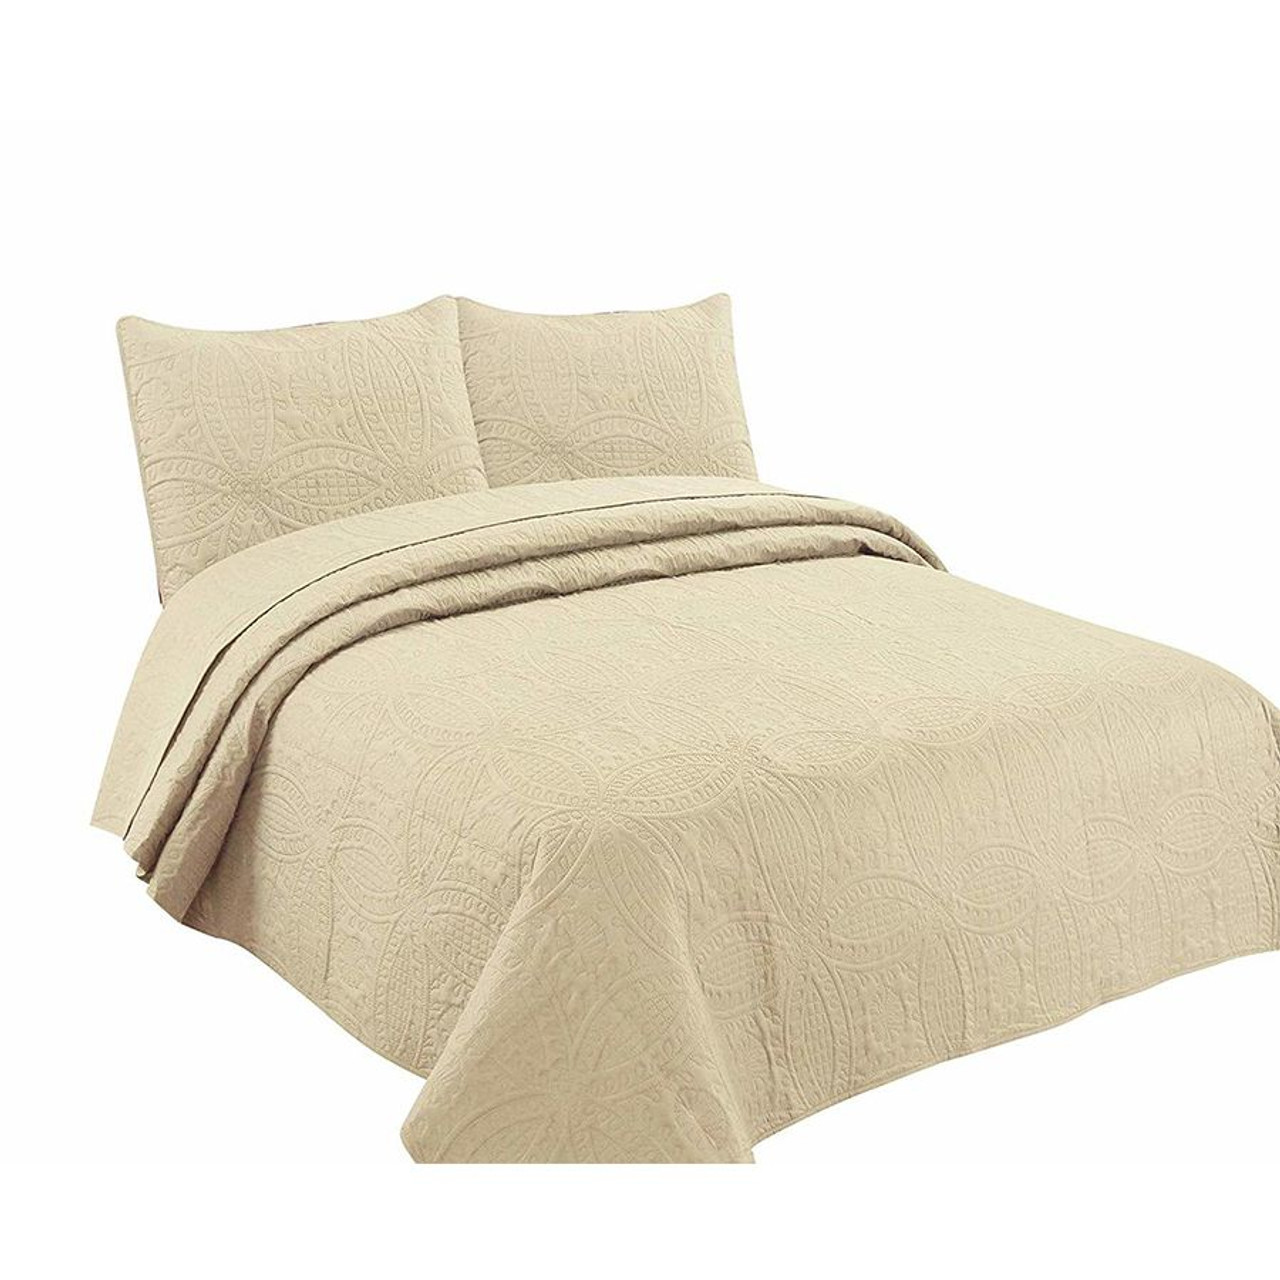 3 Pc Oversized Bedspread Coverlet Set Beige Color